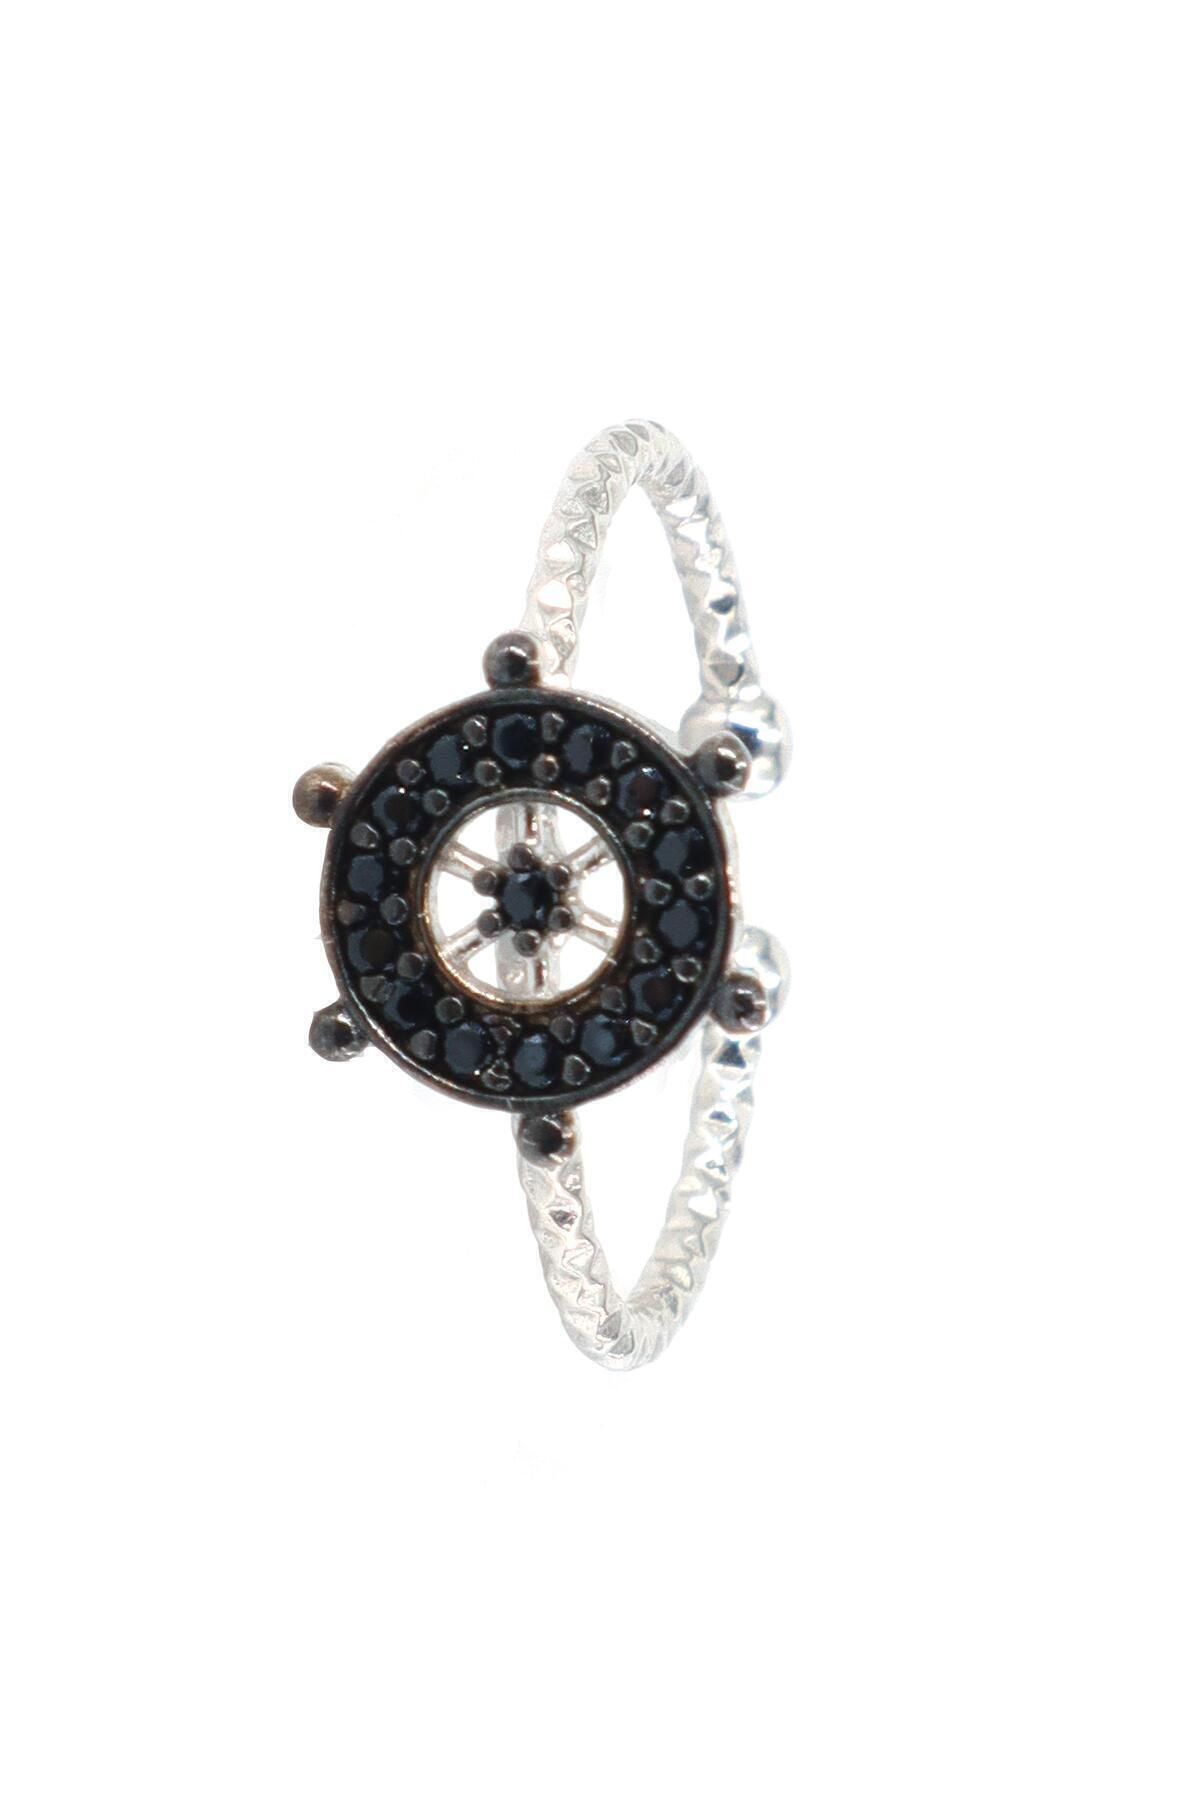 Neva Jewelry 925 Ayar Ayarlanabilir Siyah Renk Dümen Modelli Gümüş Yüzük